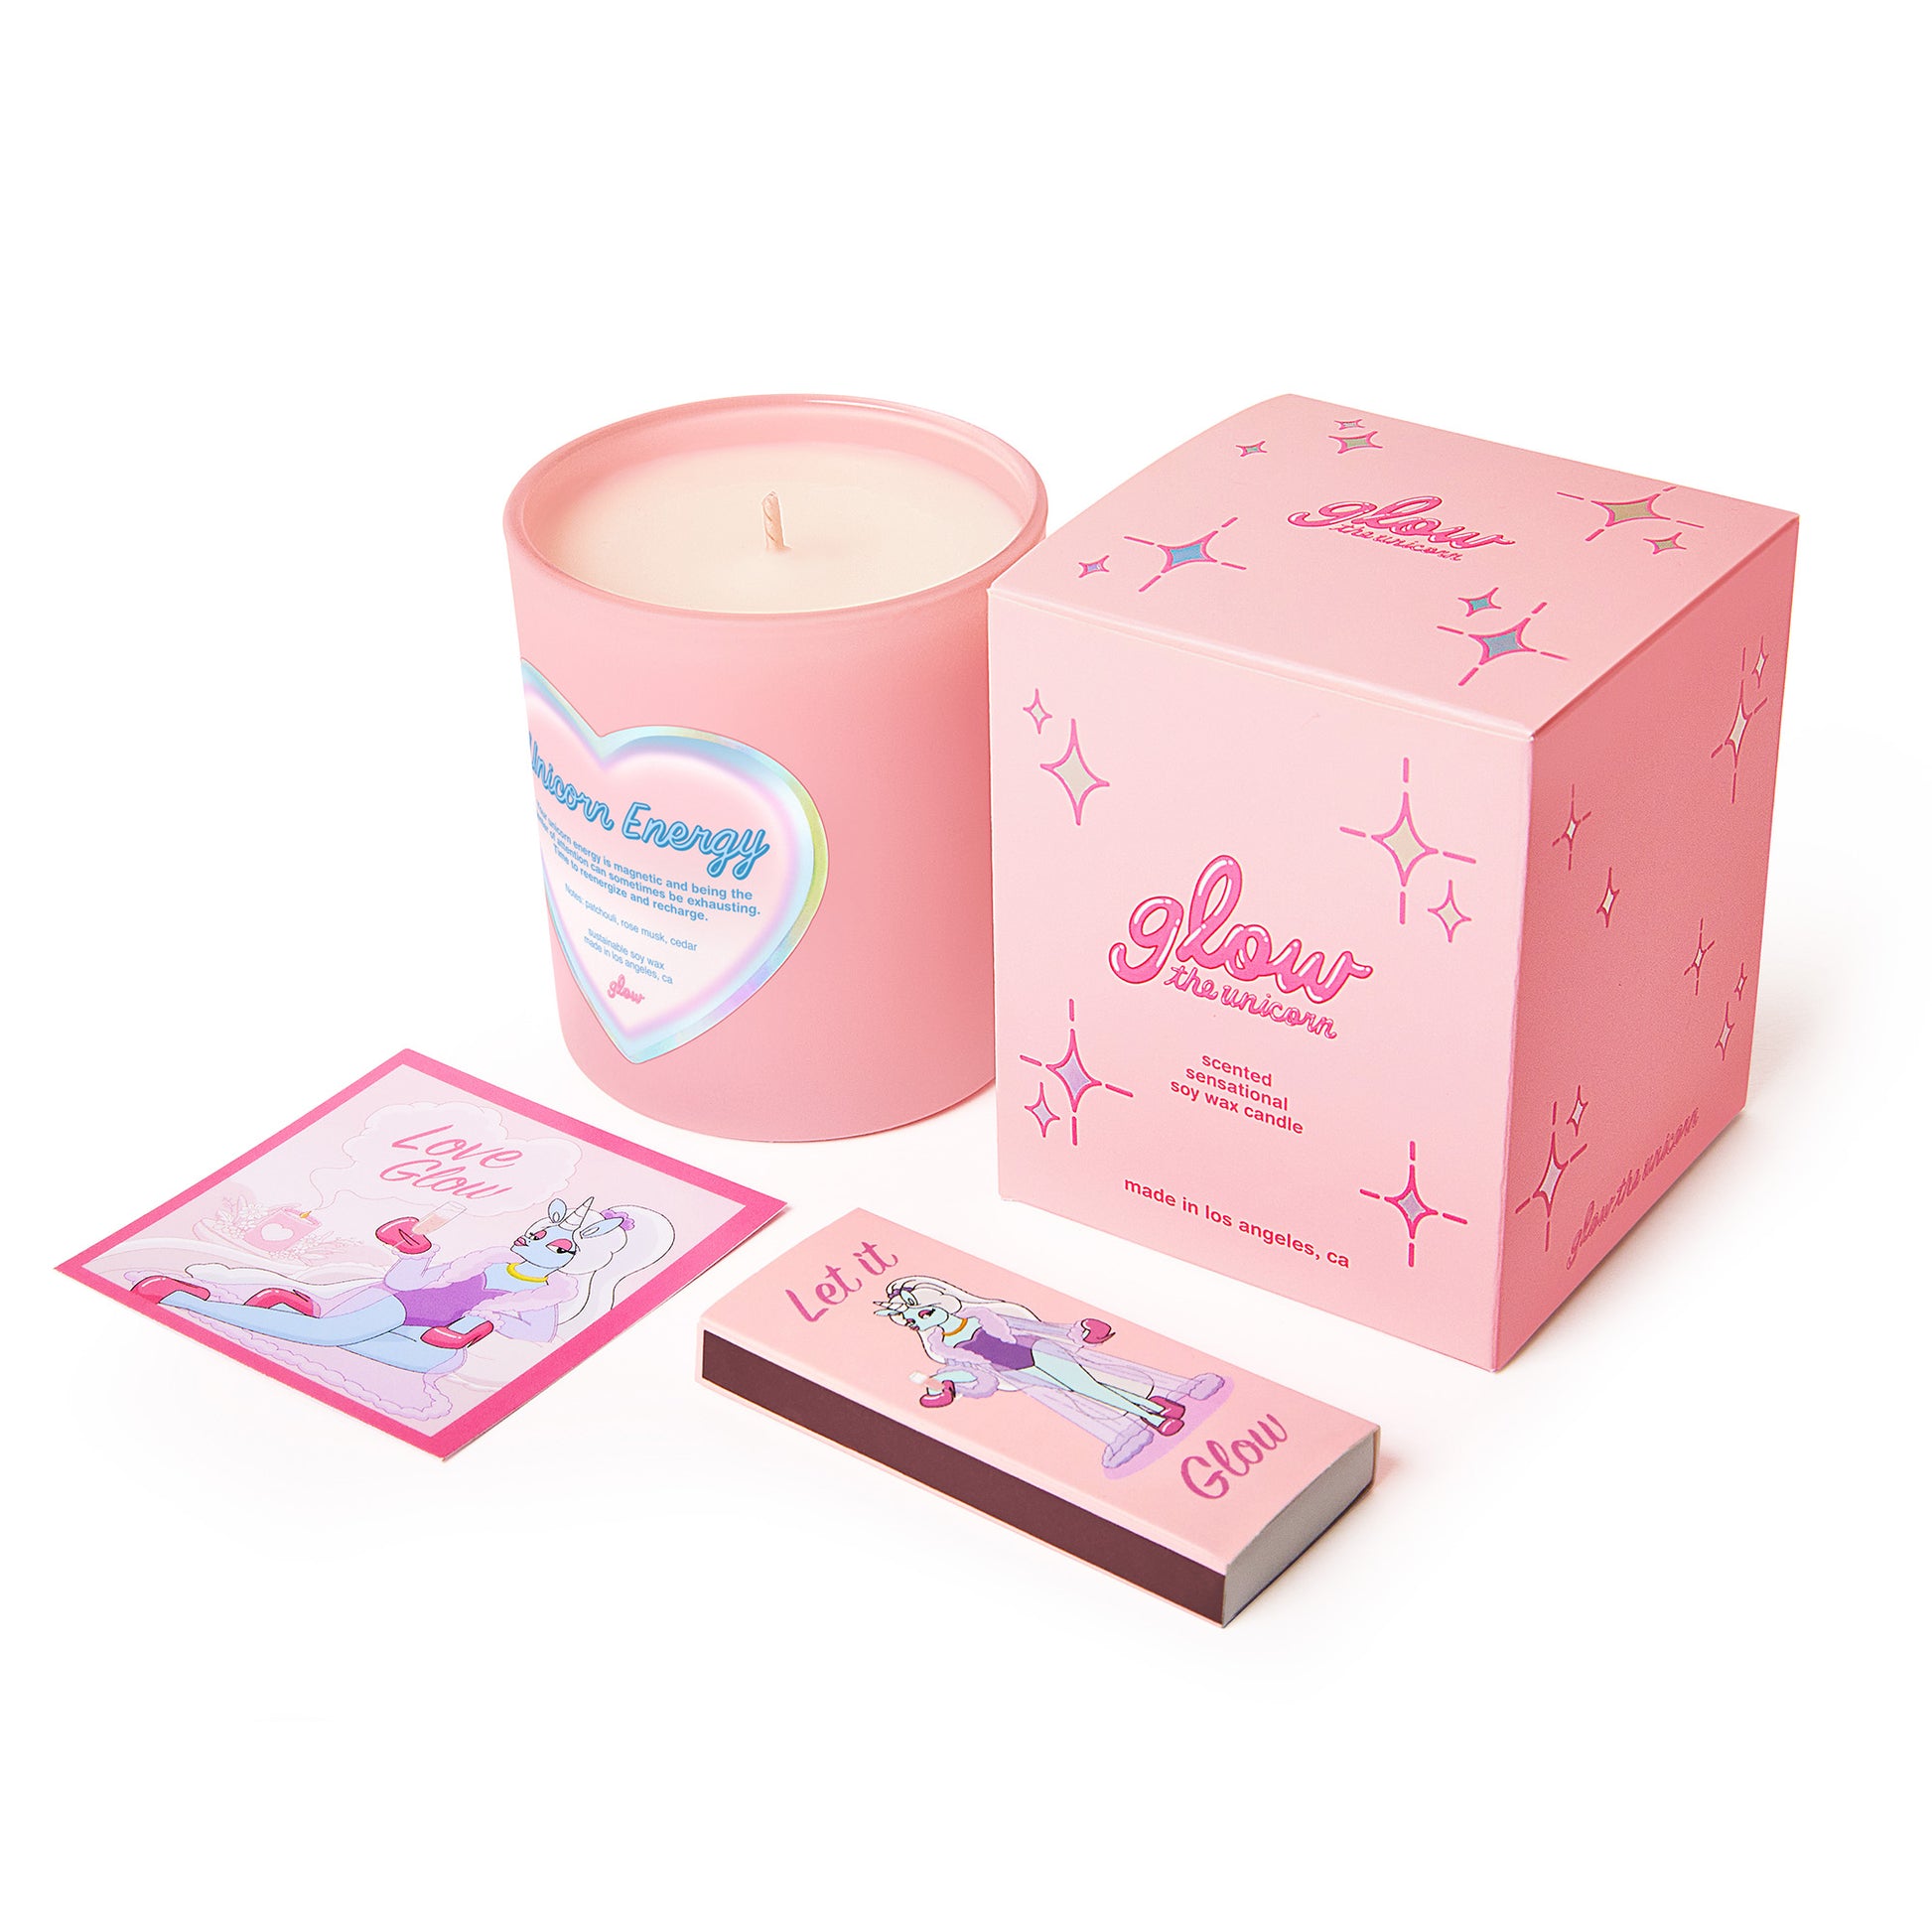 unicorn energy candle set package on white bg